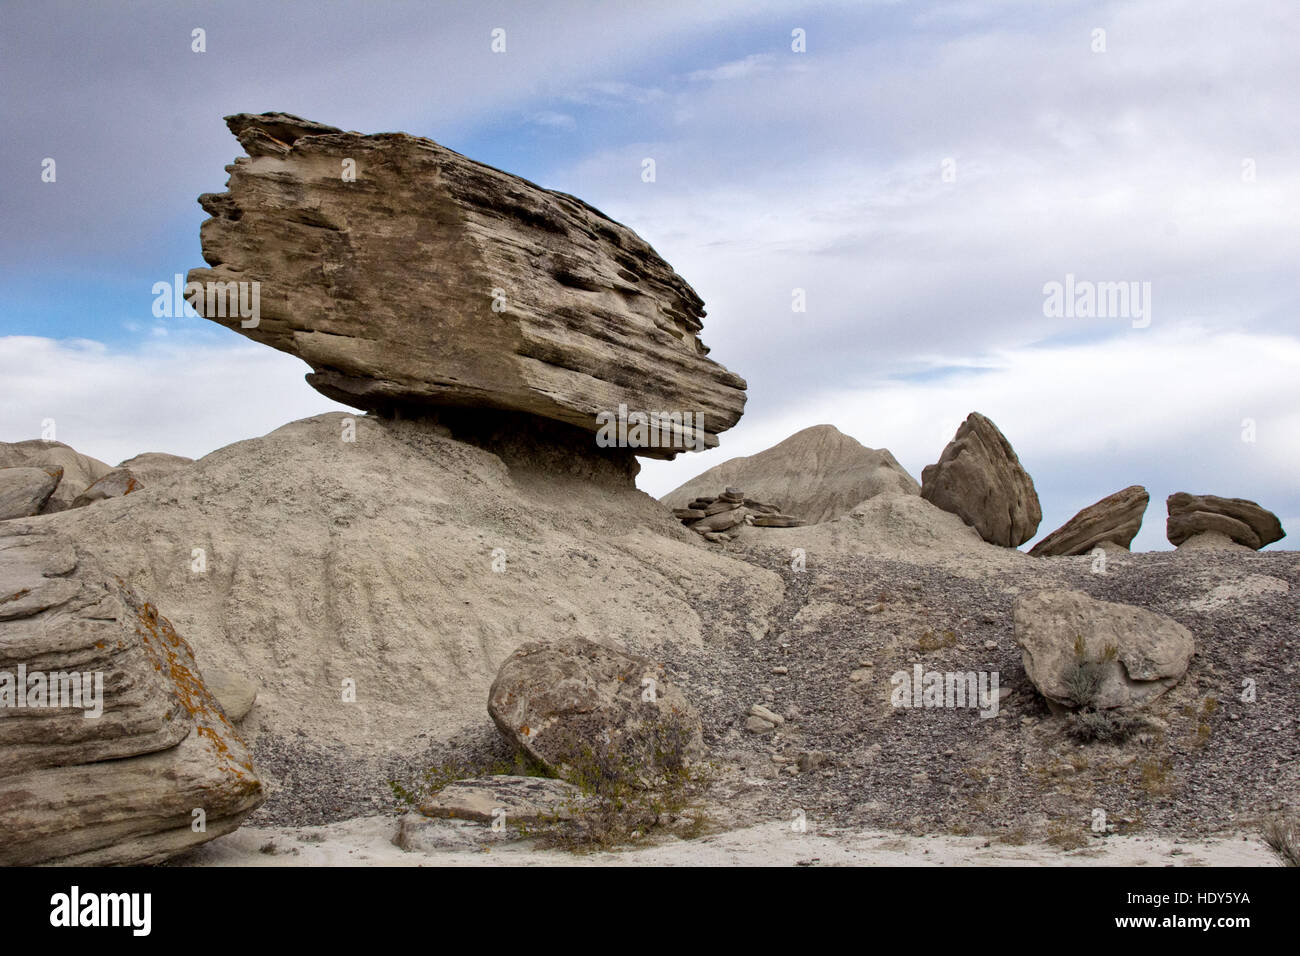 Wanderwege durch den Fliegenpilz geologischen Park nehmen Sie vorbei an alten Felsformationen in einer sehr schönen mondartige Topologie Stockfoto